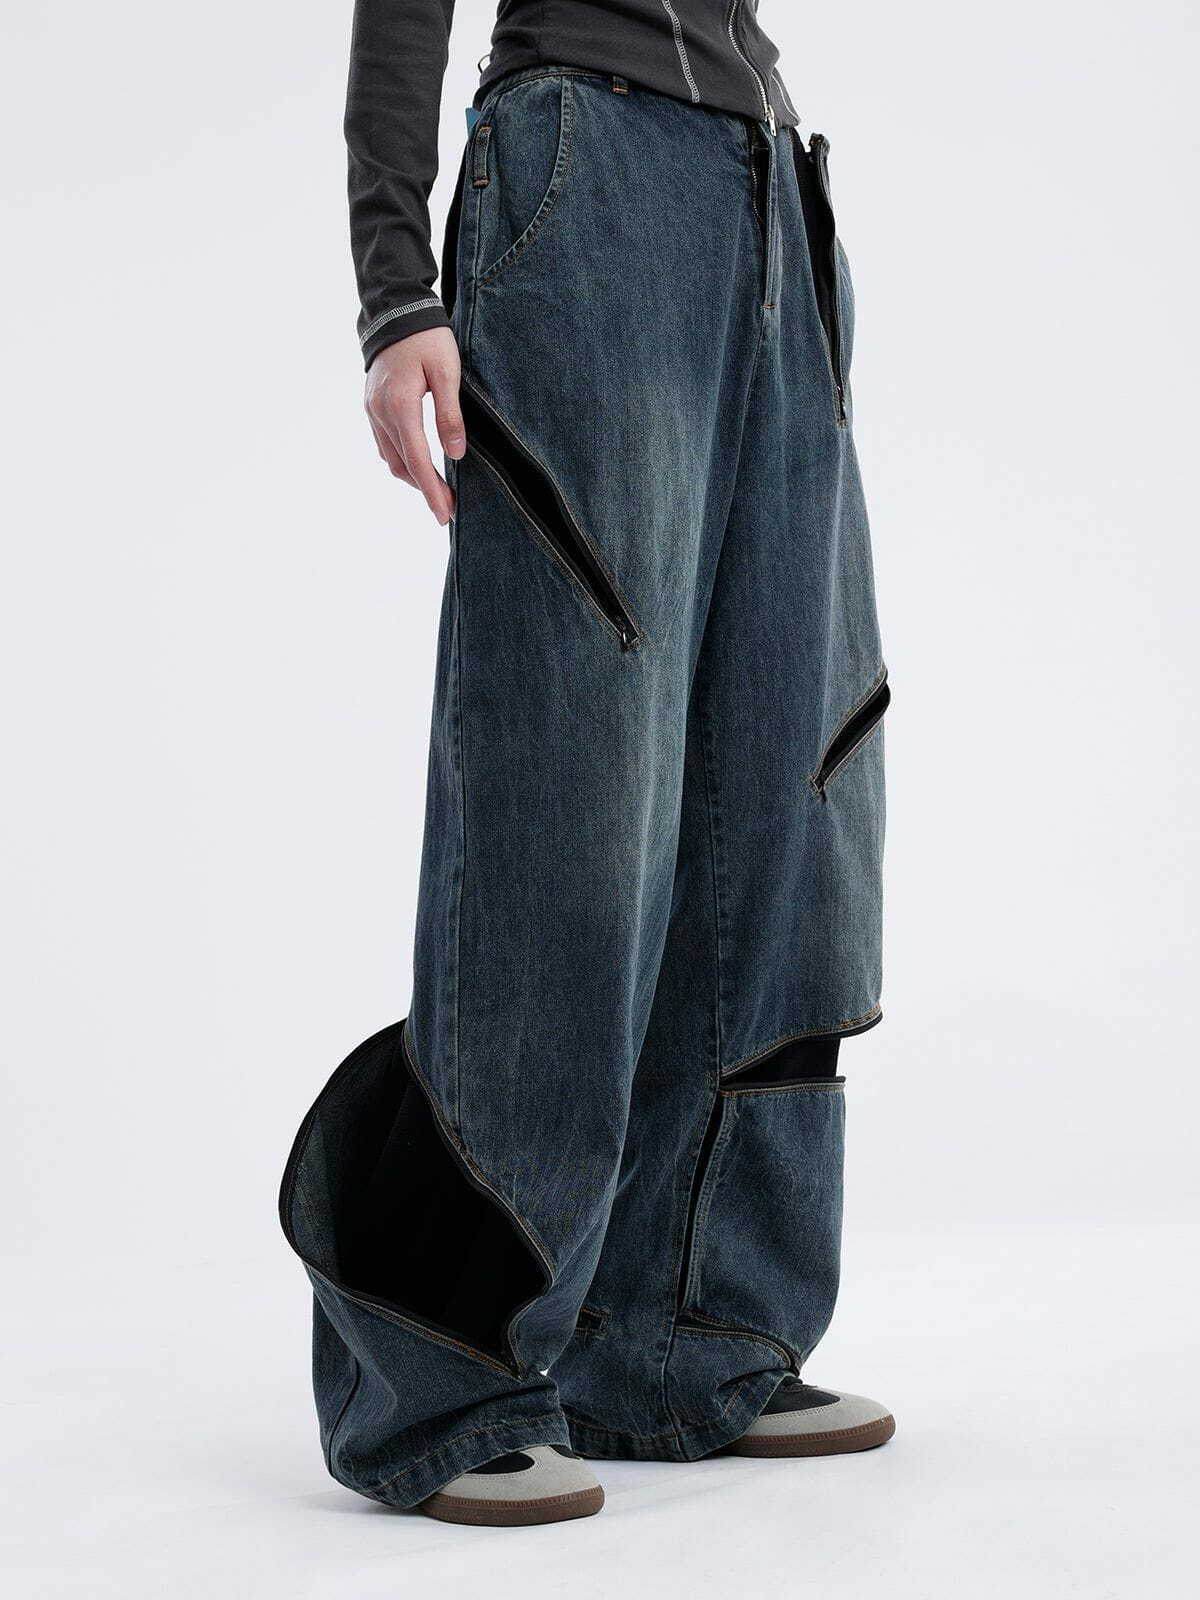 urban chic multi zipper jeans   trendy y2k aesthetic 8037